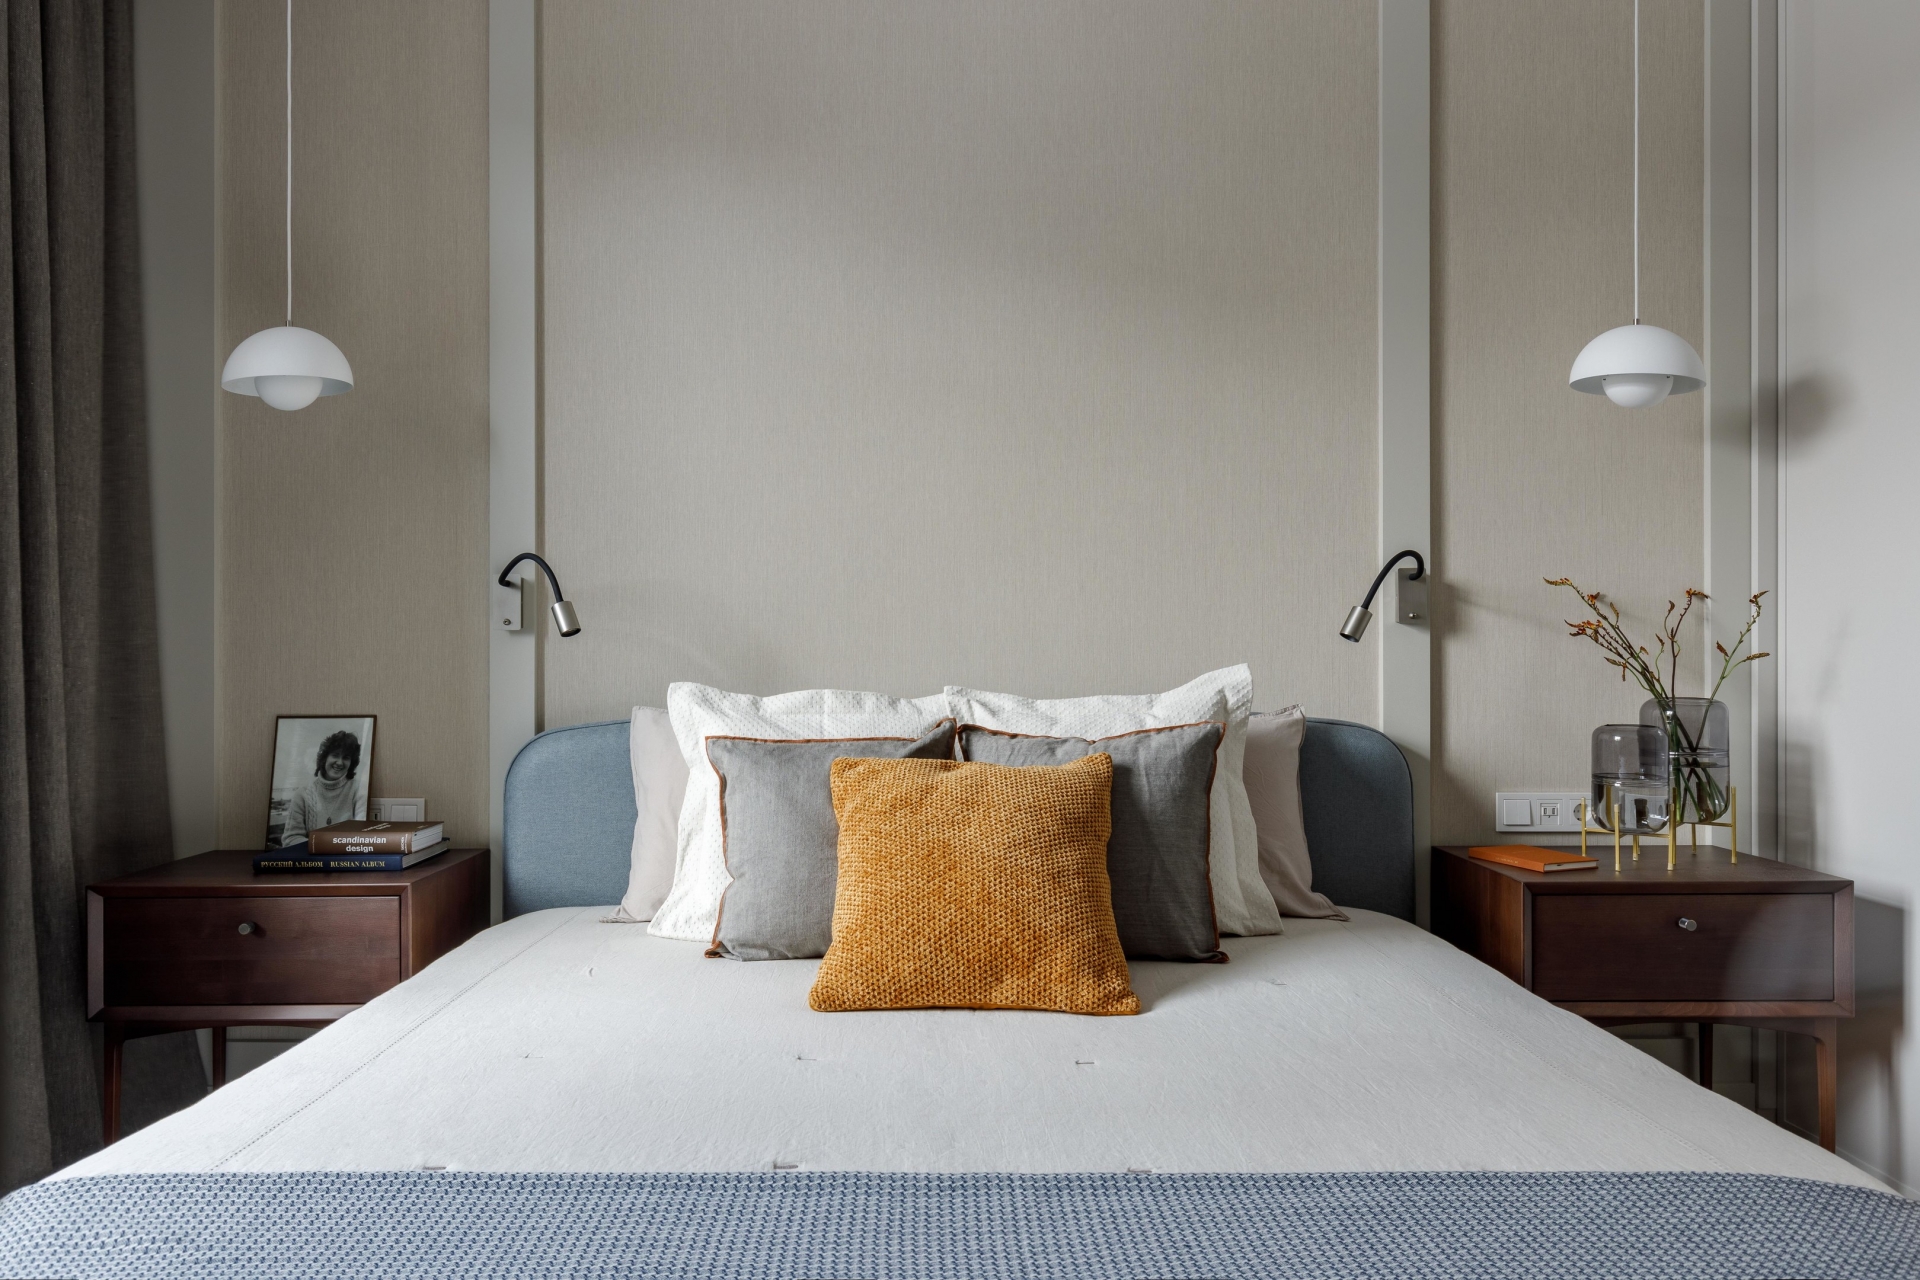 Phòng ngủ chính có thiết kế đơn giản với gam màu be nhạt cùng gờ tường nổi bật. Nội thất bố trí cân xứng nhau, bao gồm cả táp đầu giường và đèn thả trần cho cái nhìn hài hòa, cân đối.